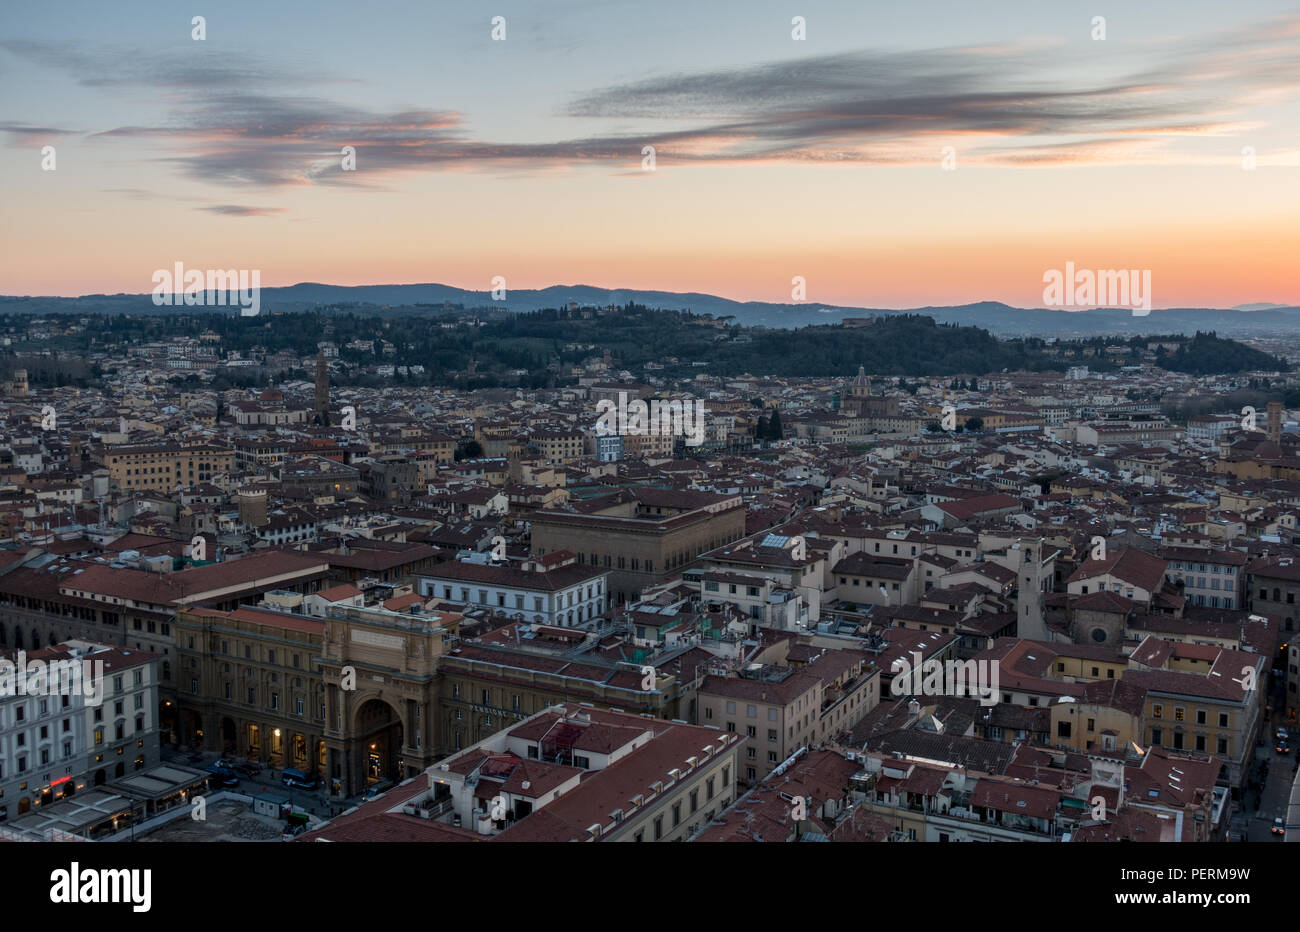 Florenz, Italien - 23. März 2018: Abend leuchtet auf die Dächer der Stadt Florenz, mit der Villa Hügel mit marmorplatten von Bellosguardo hinter steigt. Stockfoto